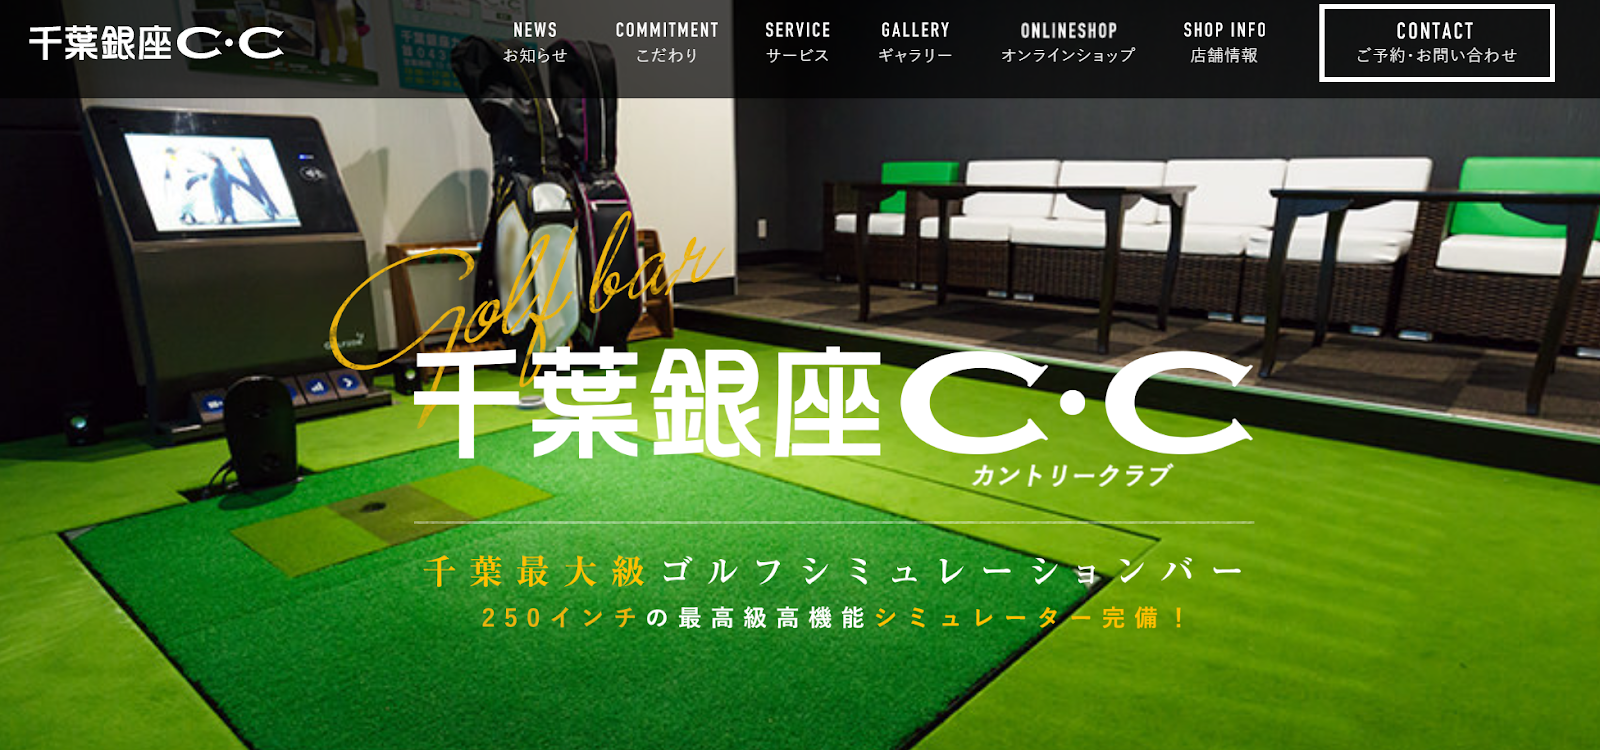 Golf Lounge 千葉銀座C･C